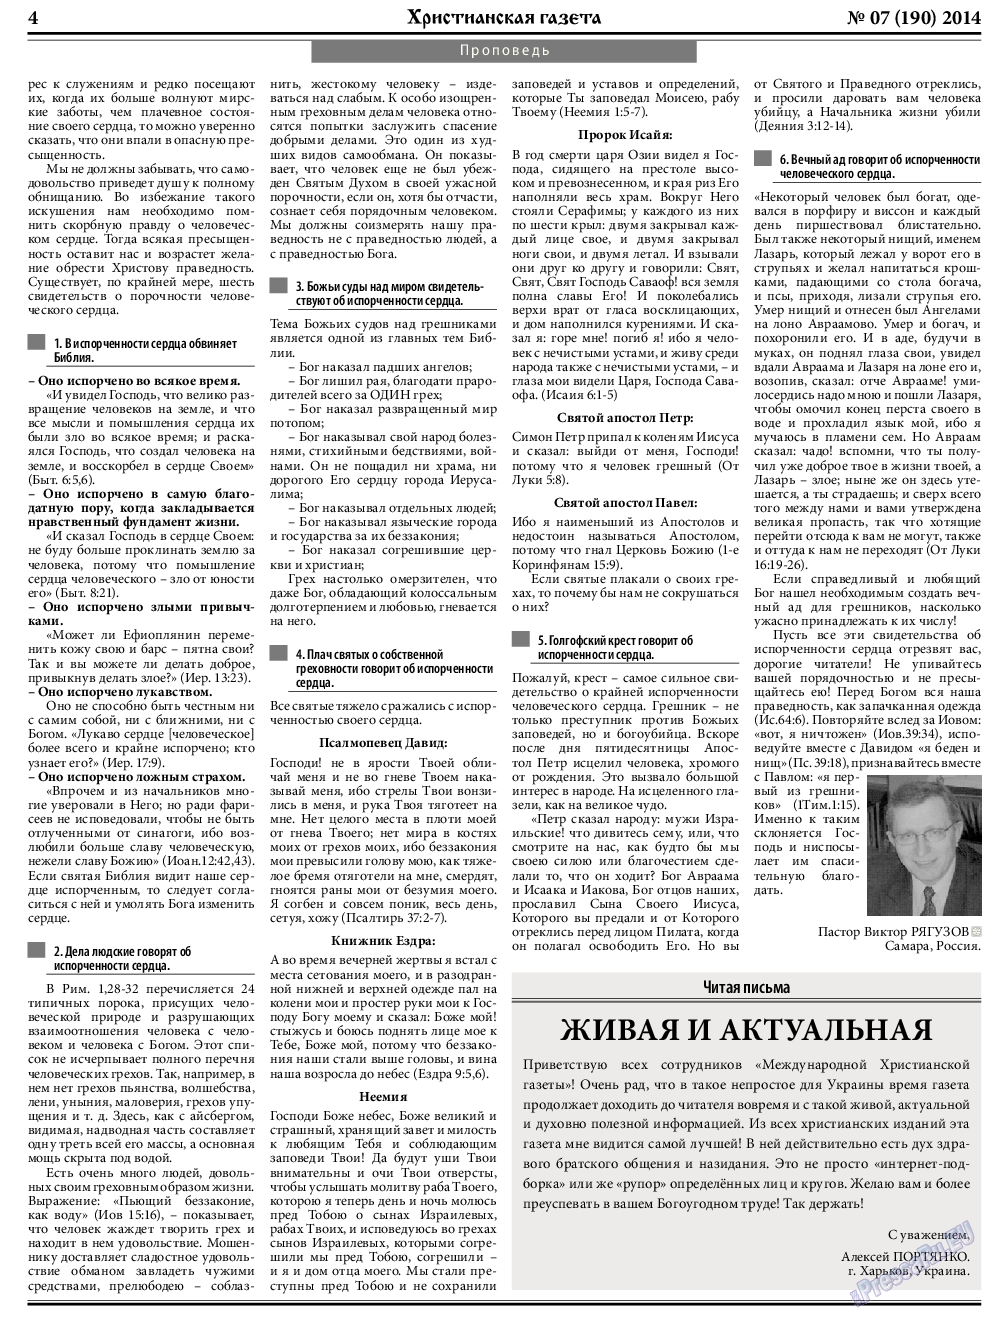 Христианская газета, газета. 2014 №7 стр.4